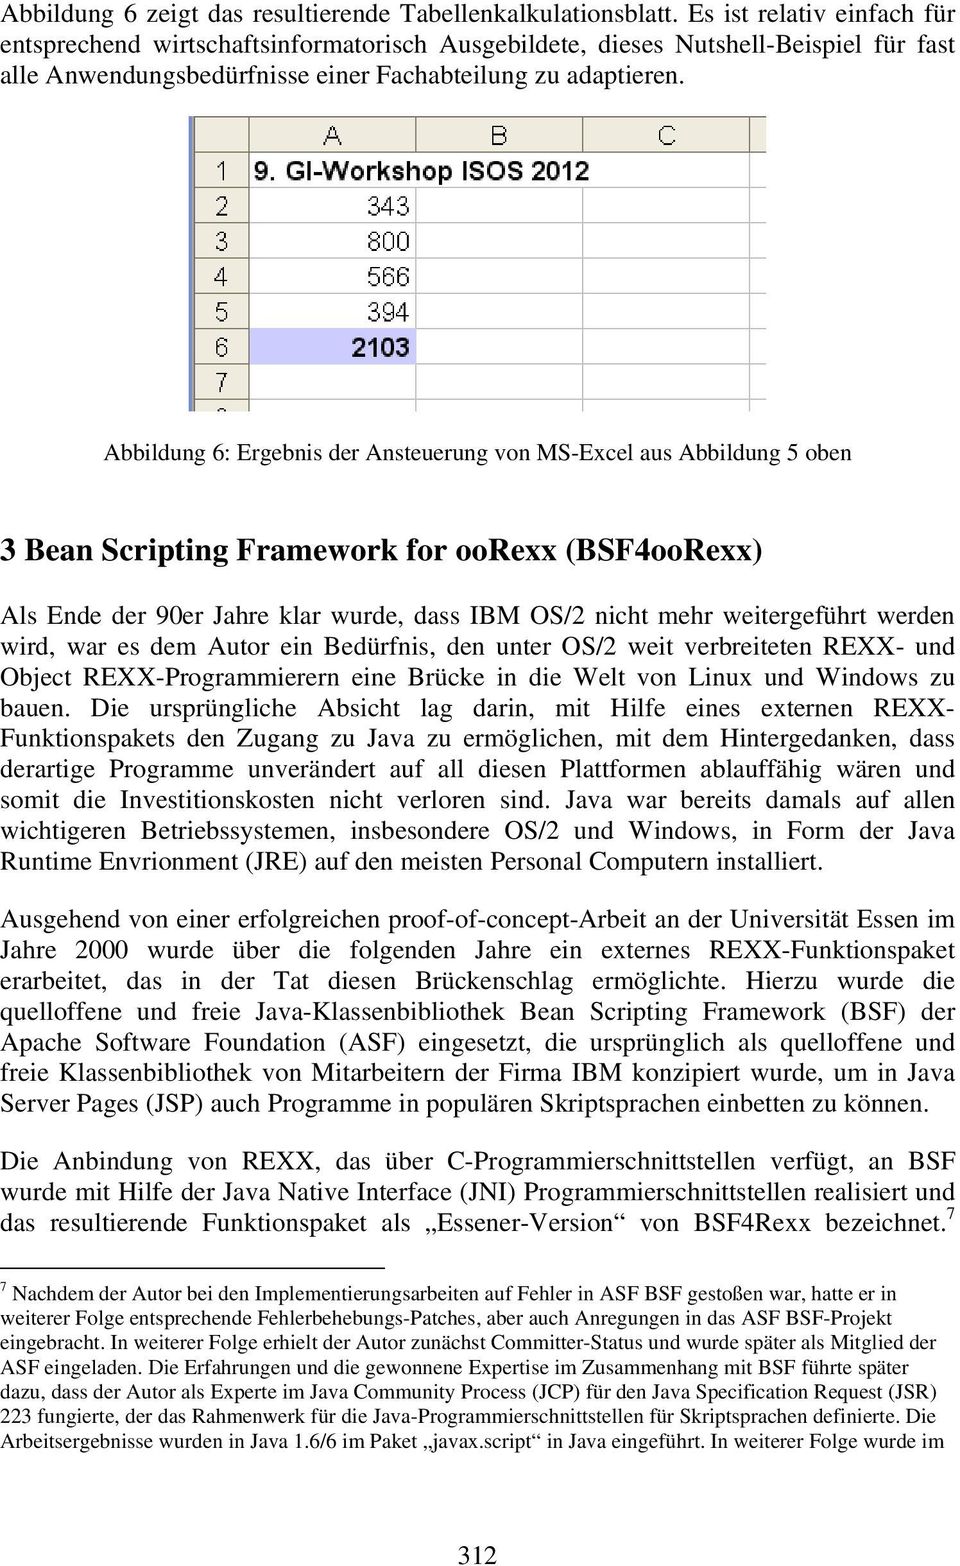 Abbildung 6: Ergebnis der Ansteuerung von MS-Excel aus Abbildung 5 oben 3 Bean Scripting Framework for oorexx (BSF4ooRexx) Als Ende der 90er Jahre klar wurde, dass IBM OS/2 nicht mehr weitergeführt